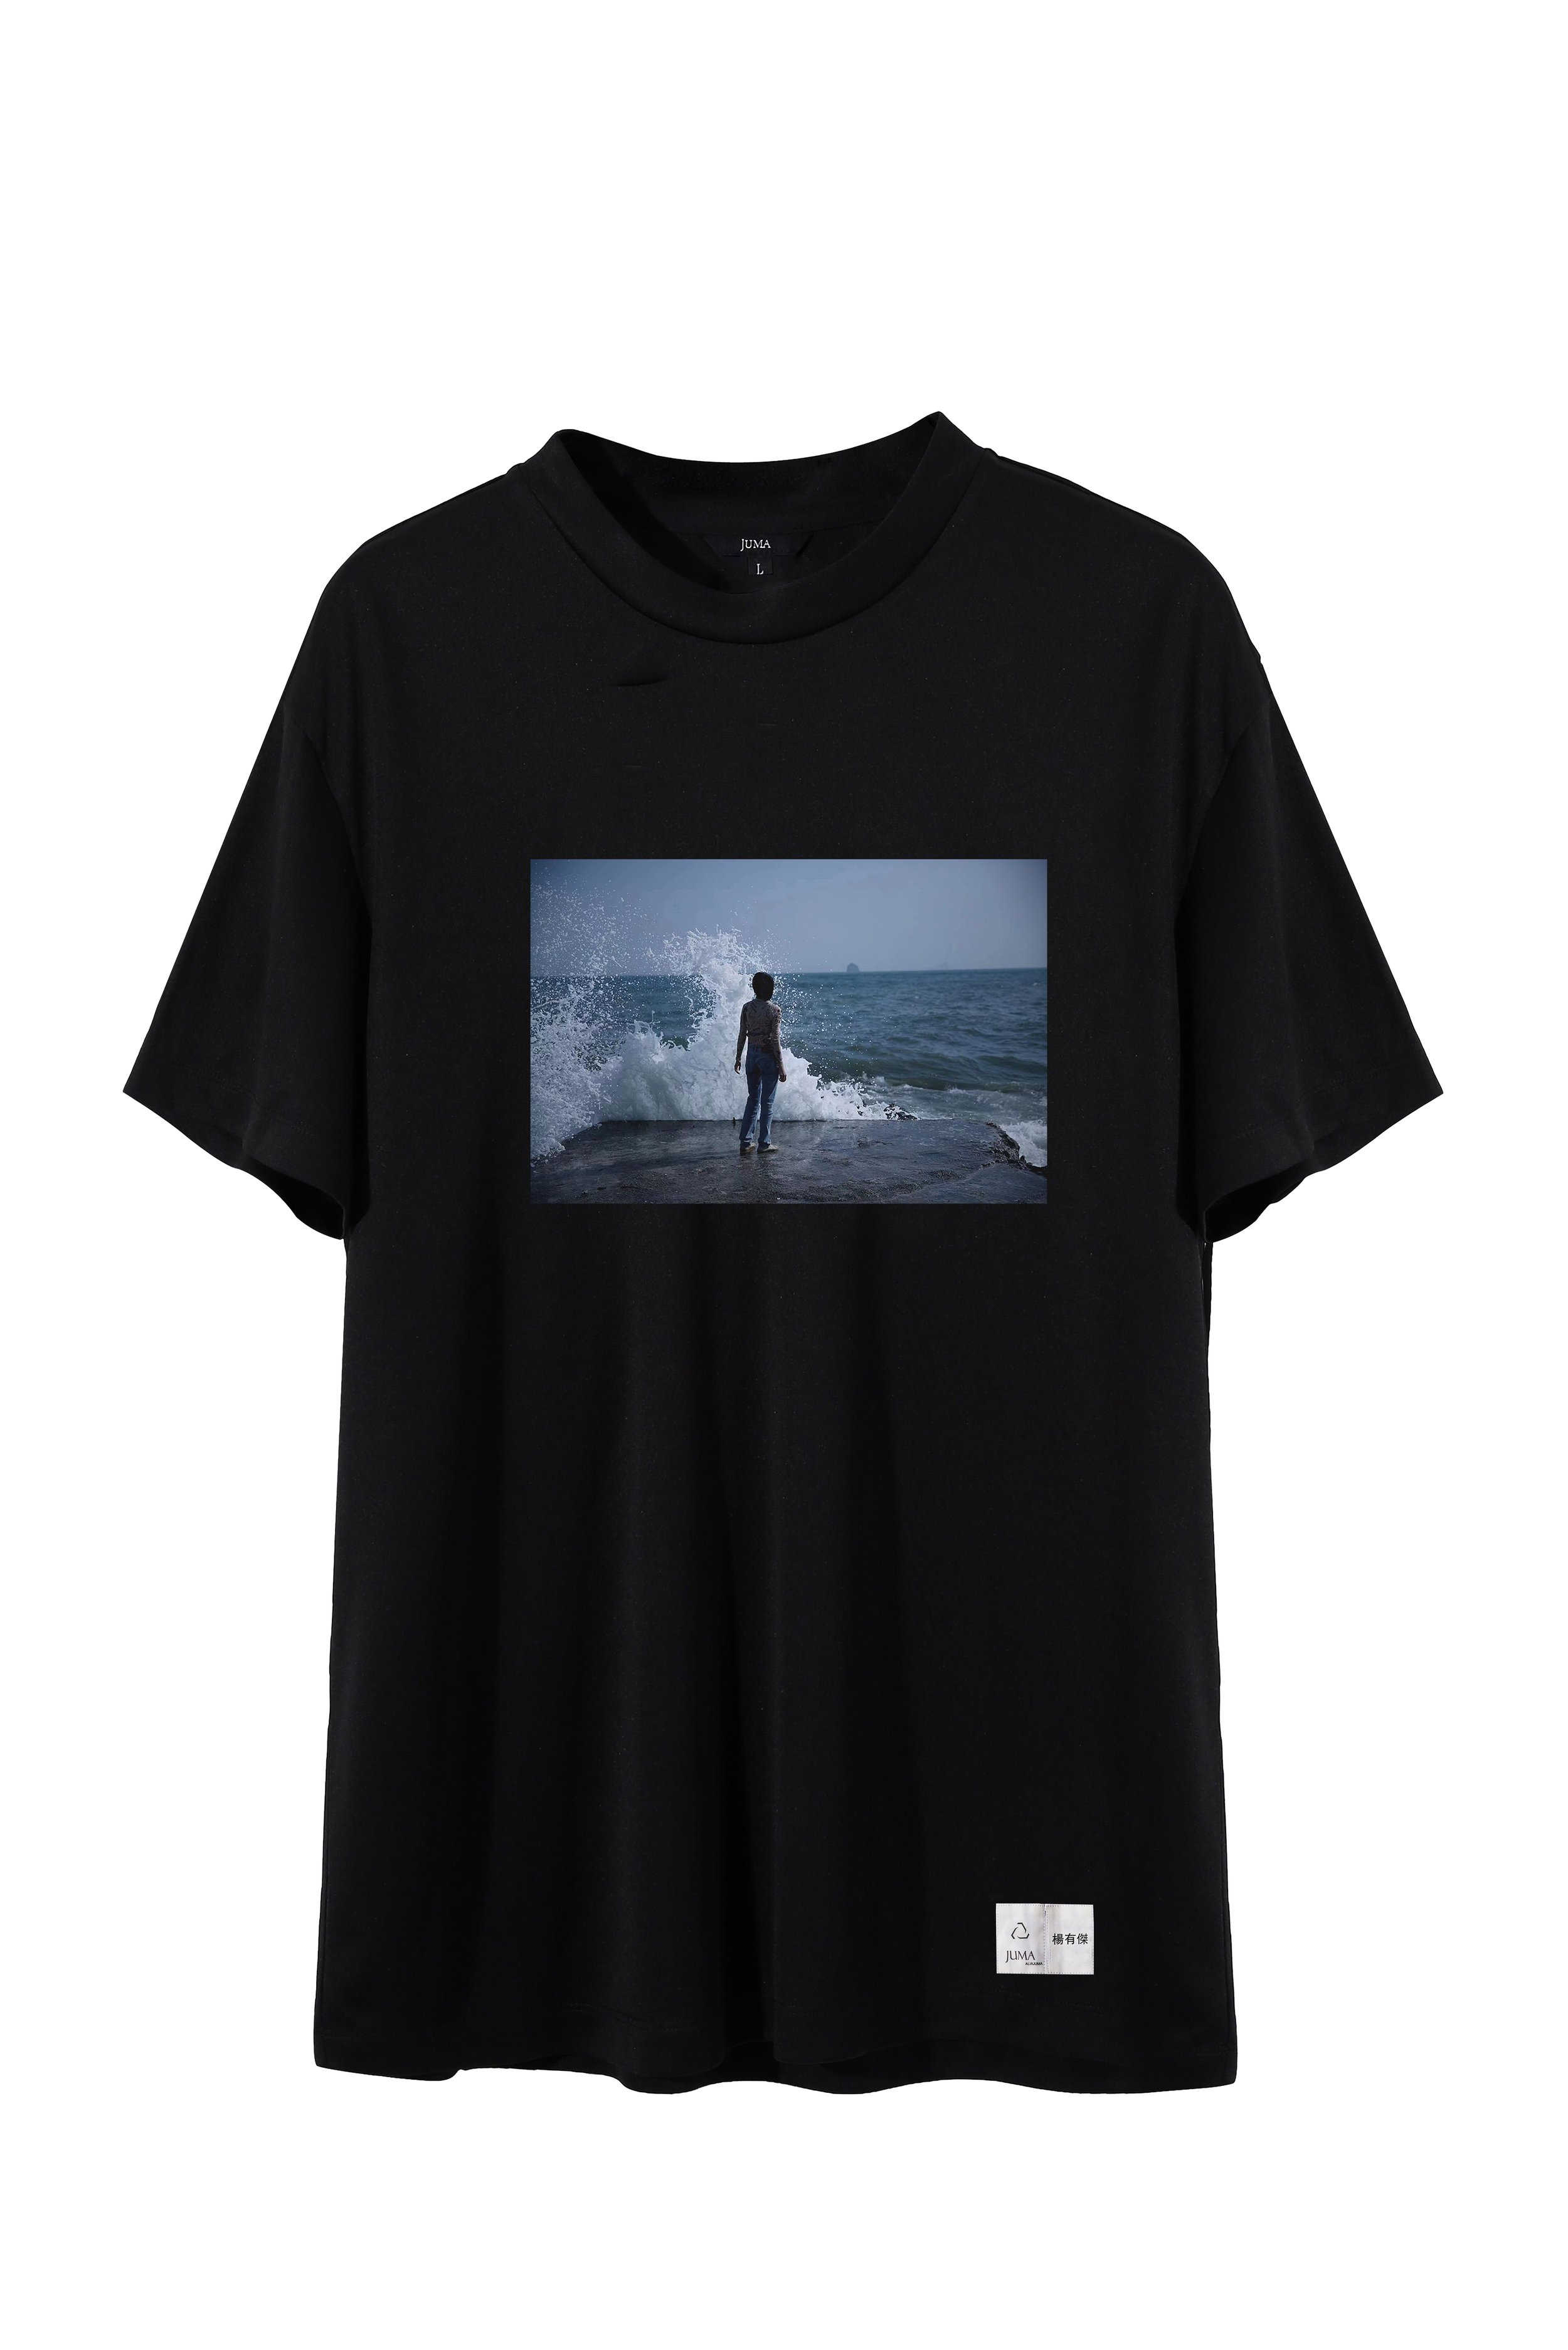 春雨  印 花 2 T 恤 - 4 个再生水瓶-黑色｜Chunyu X Print 2 T-Shirt - 4 Recycled Water Bottles - Black